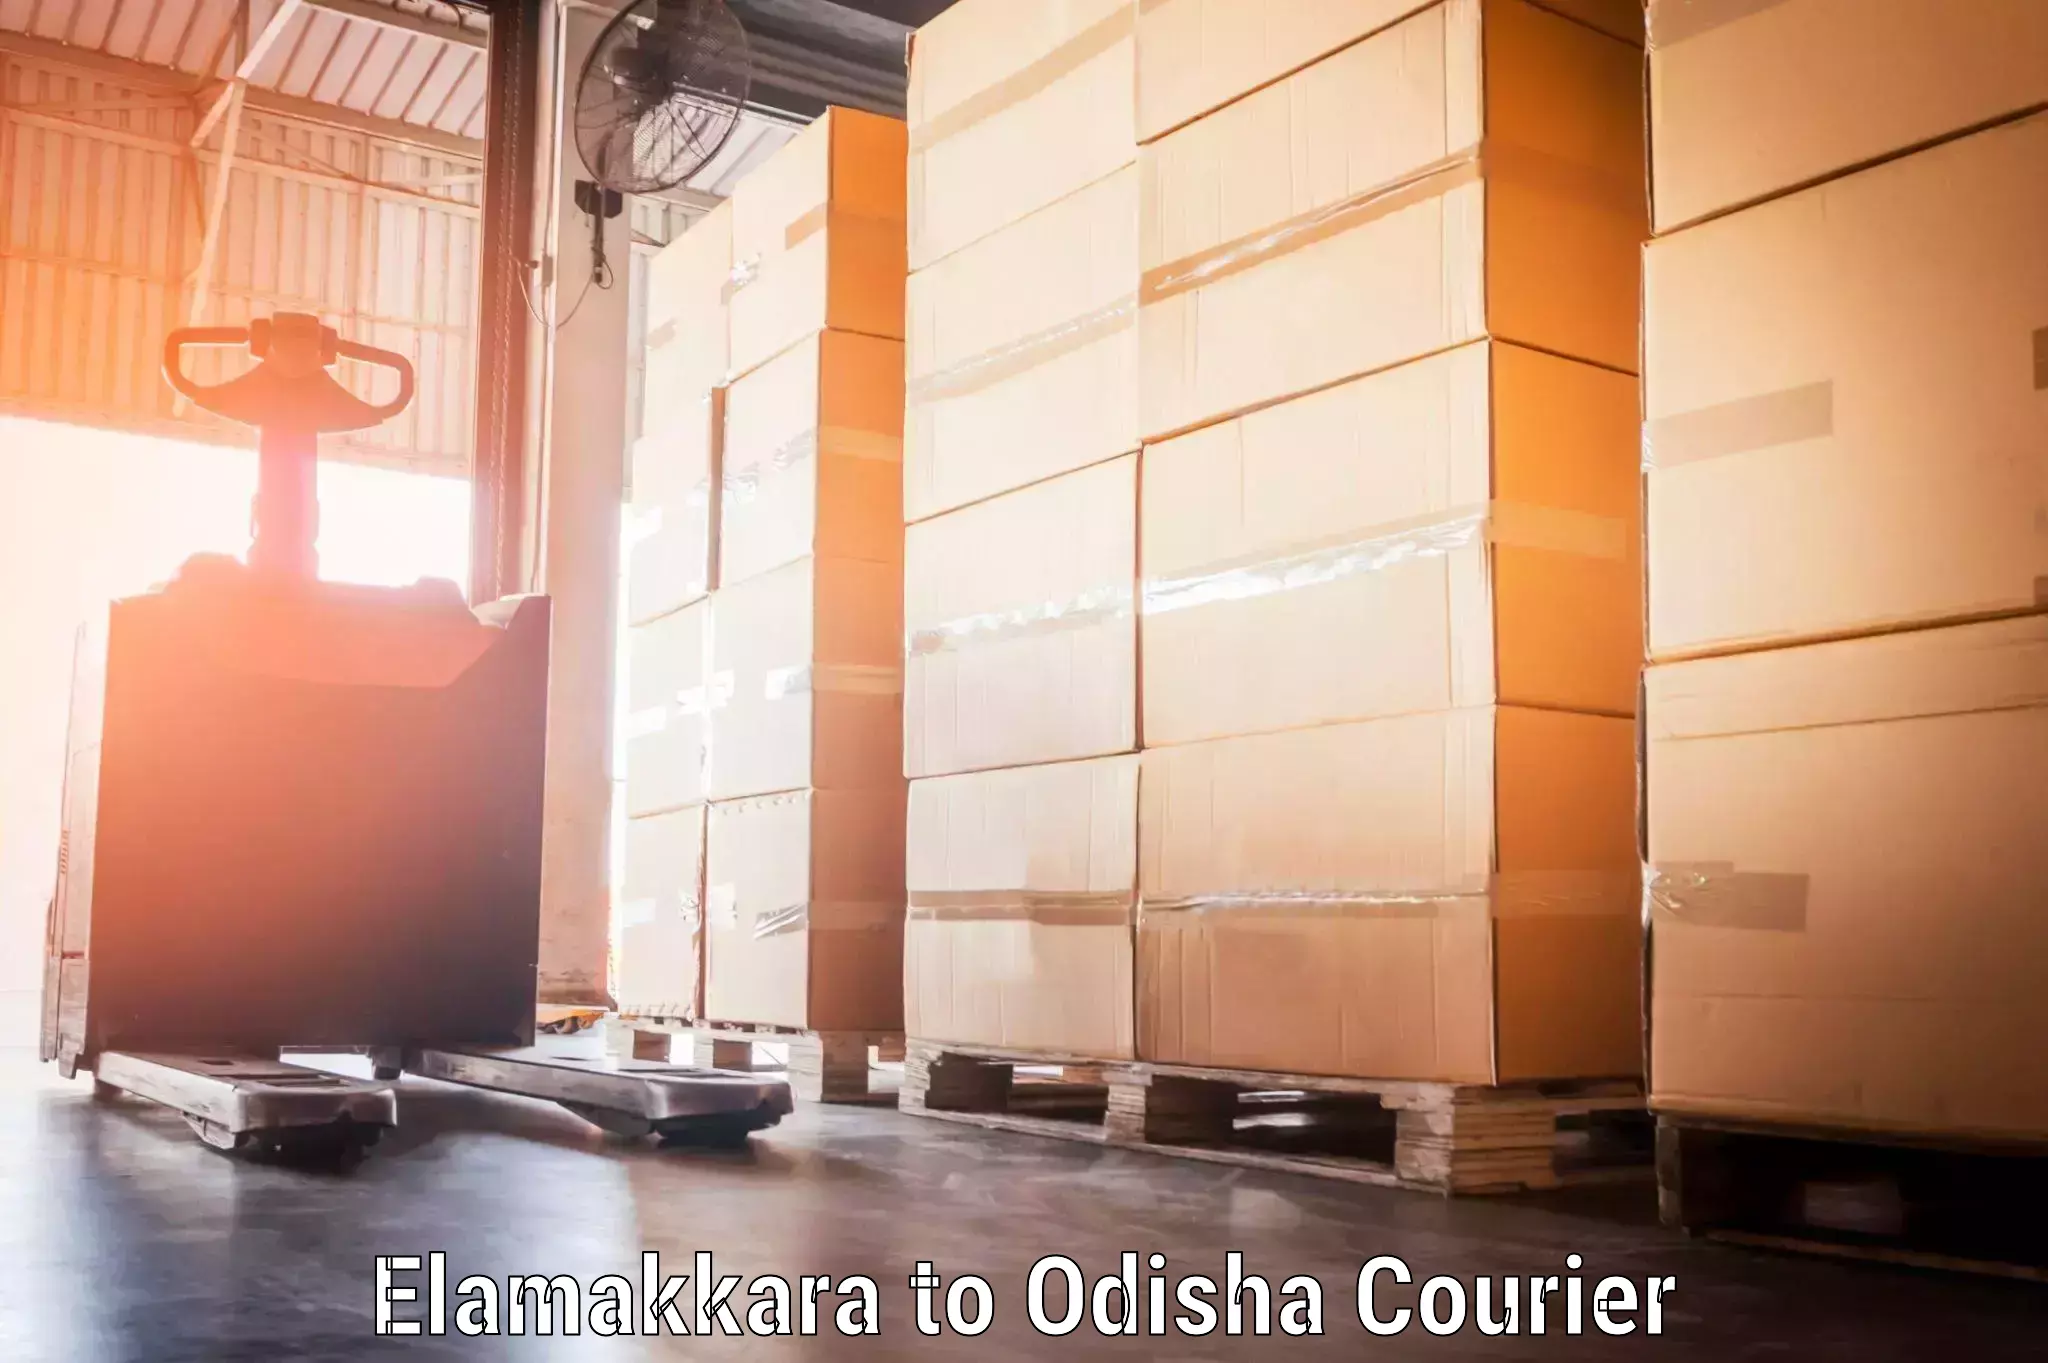 Hassle-free luggage shipping in Elamakkara to Daspalla